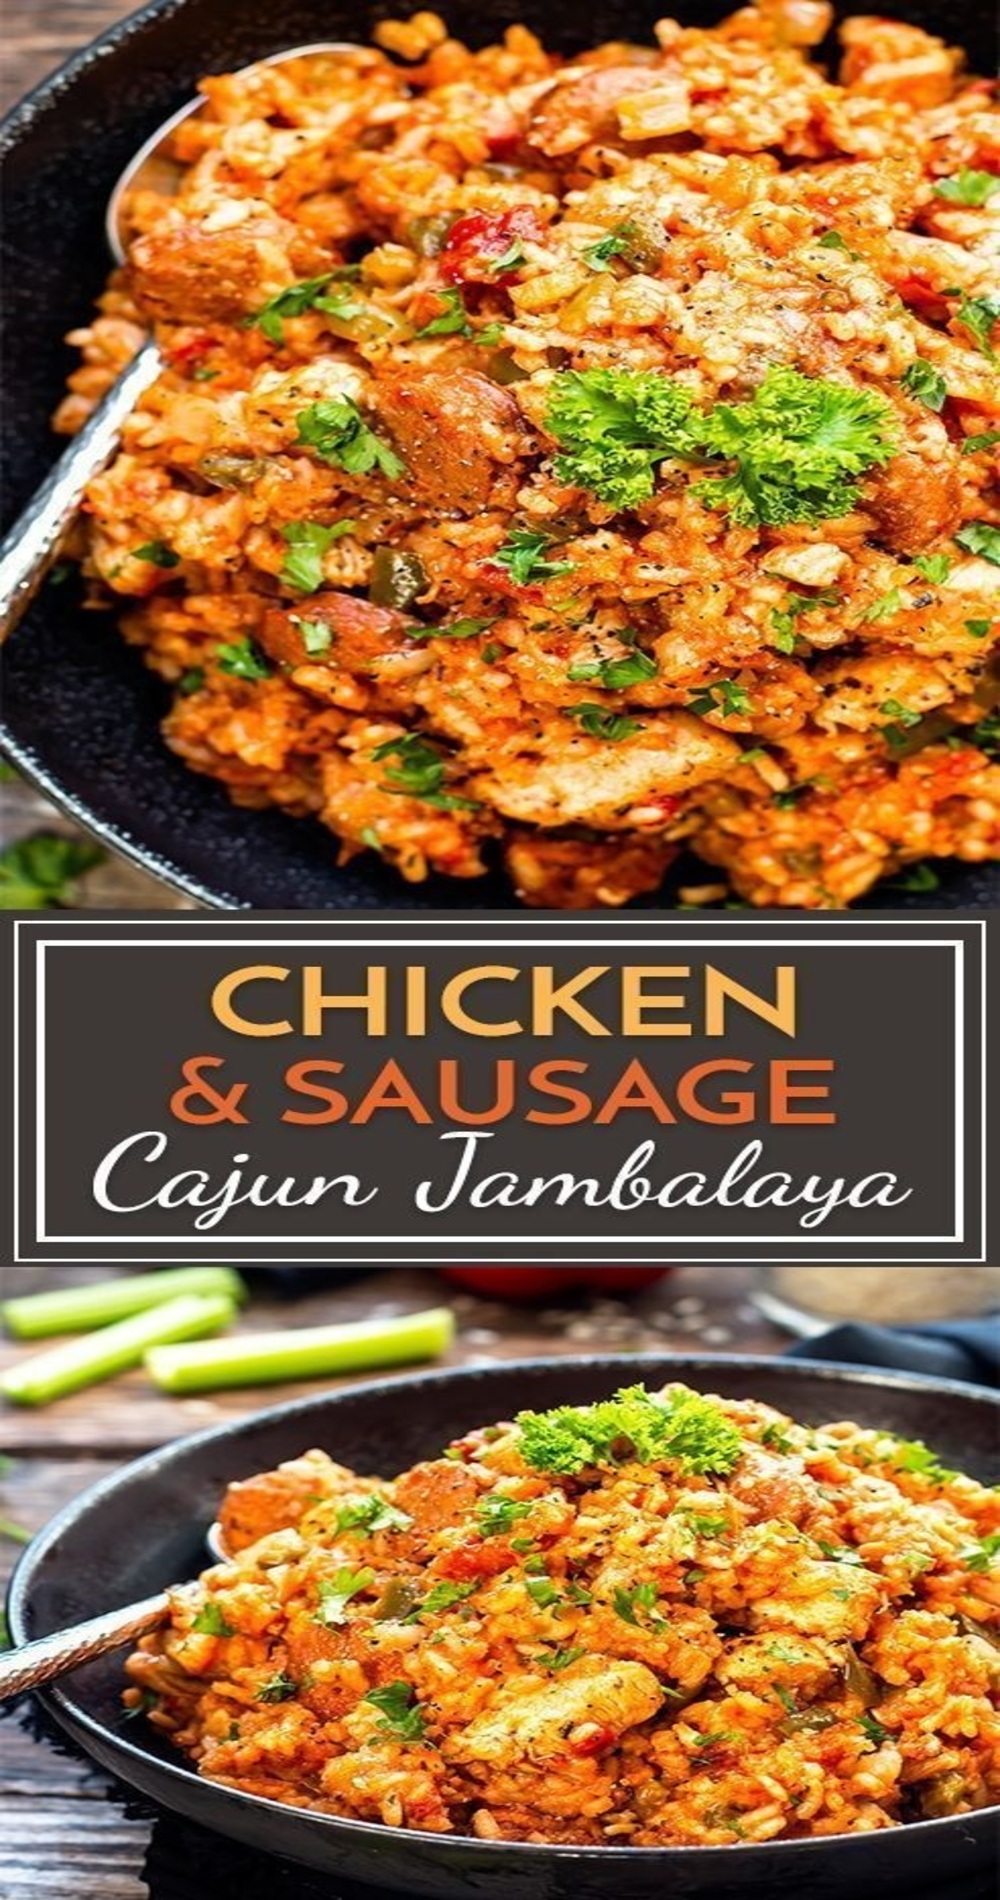 Sausage & Chicken Cajun Jambalaya